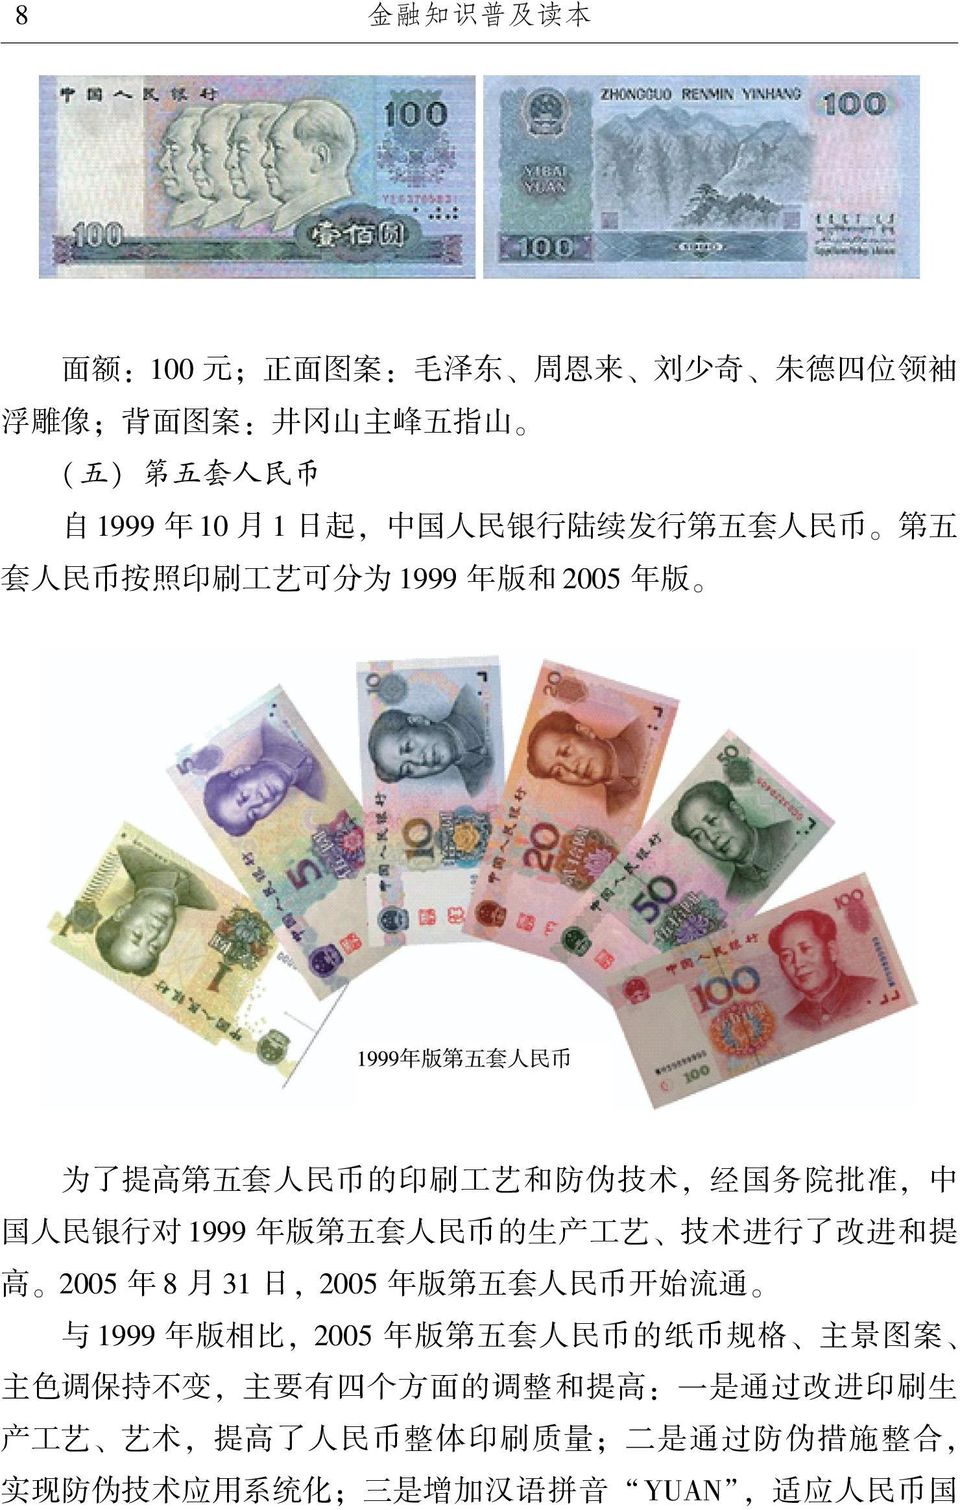 年版第五套人民币的生产工艺 技术进行了改进和提 高 2005 年 8 月 31 日, 2005 年版第五套人民币开始流通 与 1999 年版相比, 2005 年版第五套人民币的纸币规格 主景图案